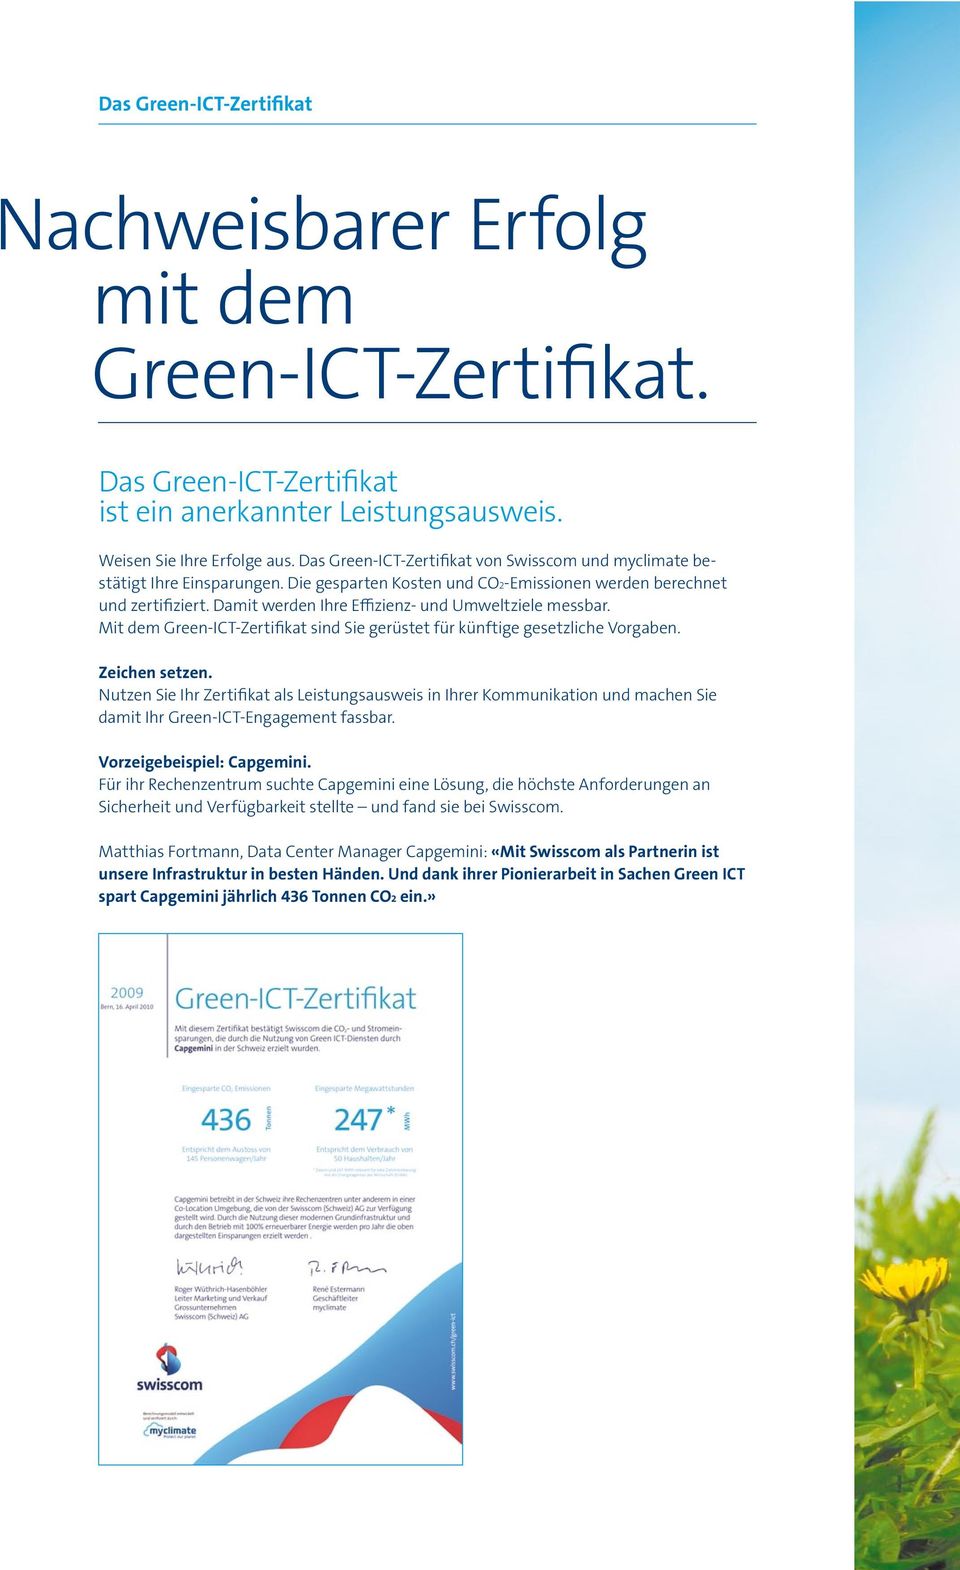 Damit werden Ihre Effizienz- und Umweltziele messbar. Mit dem Green-ICT-Zertifikat sind Sie gerüstet für künftige gesetzliche Vorgaben. Zeichen setzen.